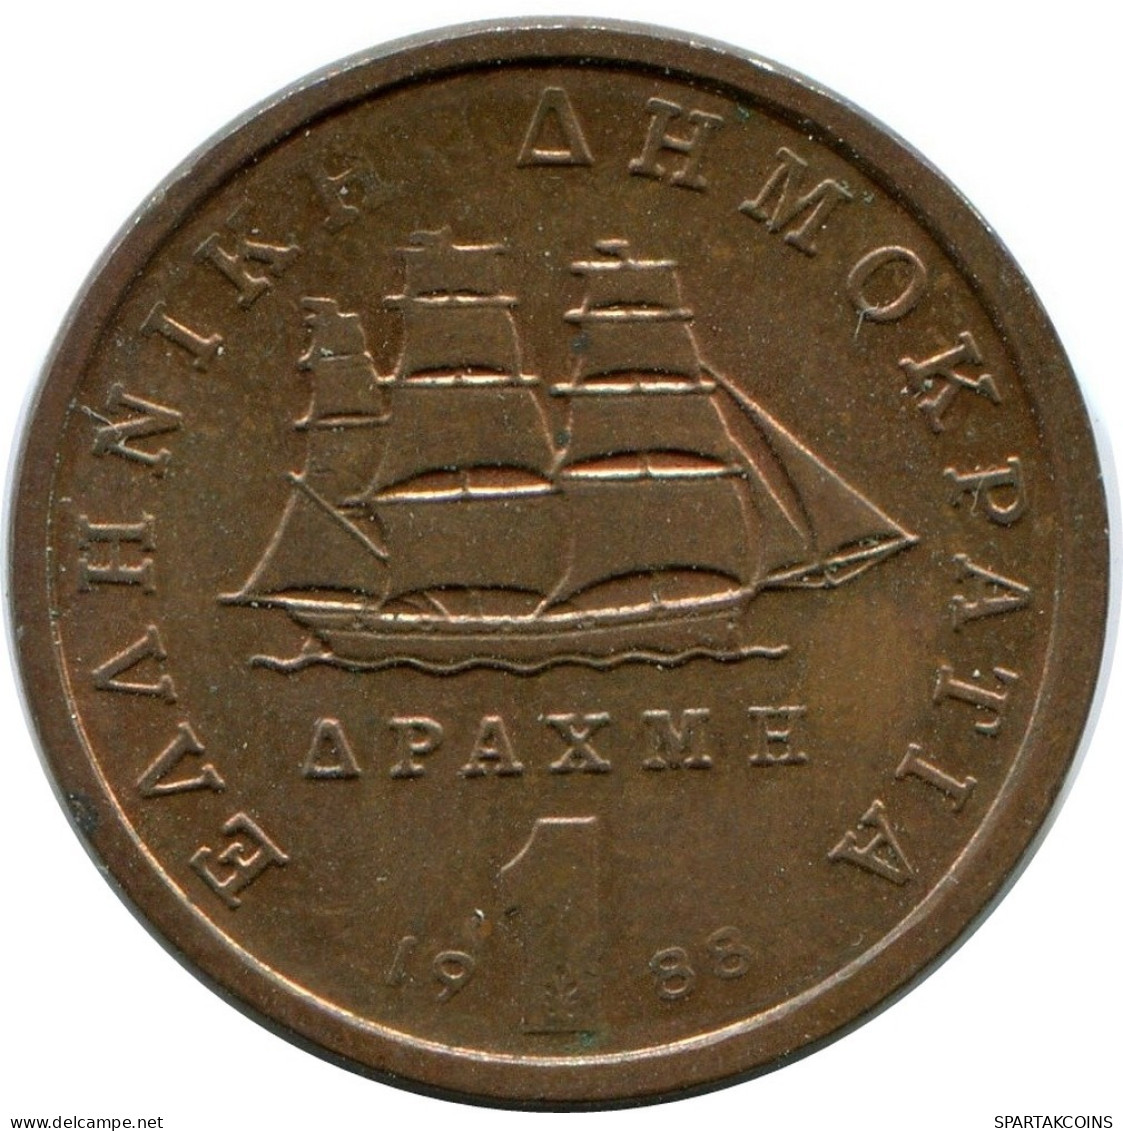 1 DRACHMA 1988 GRECIA GREECE Moneda #AY620.E.A - Grèce